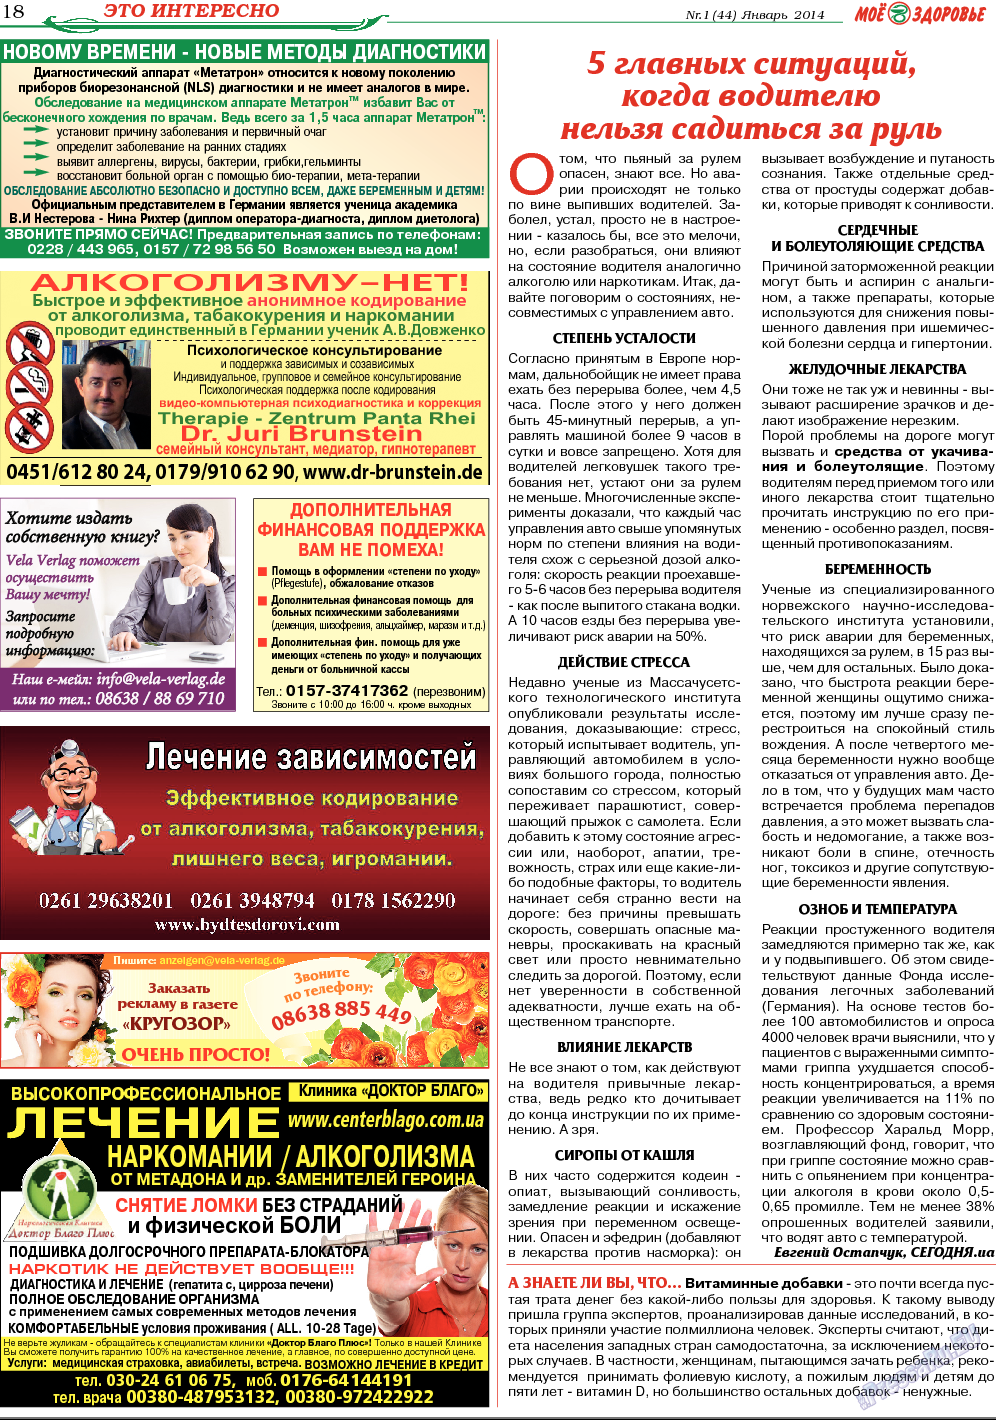 Кругозор, газета. 2014 №1 стр.18